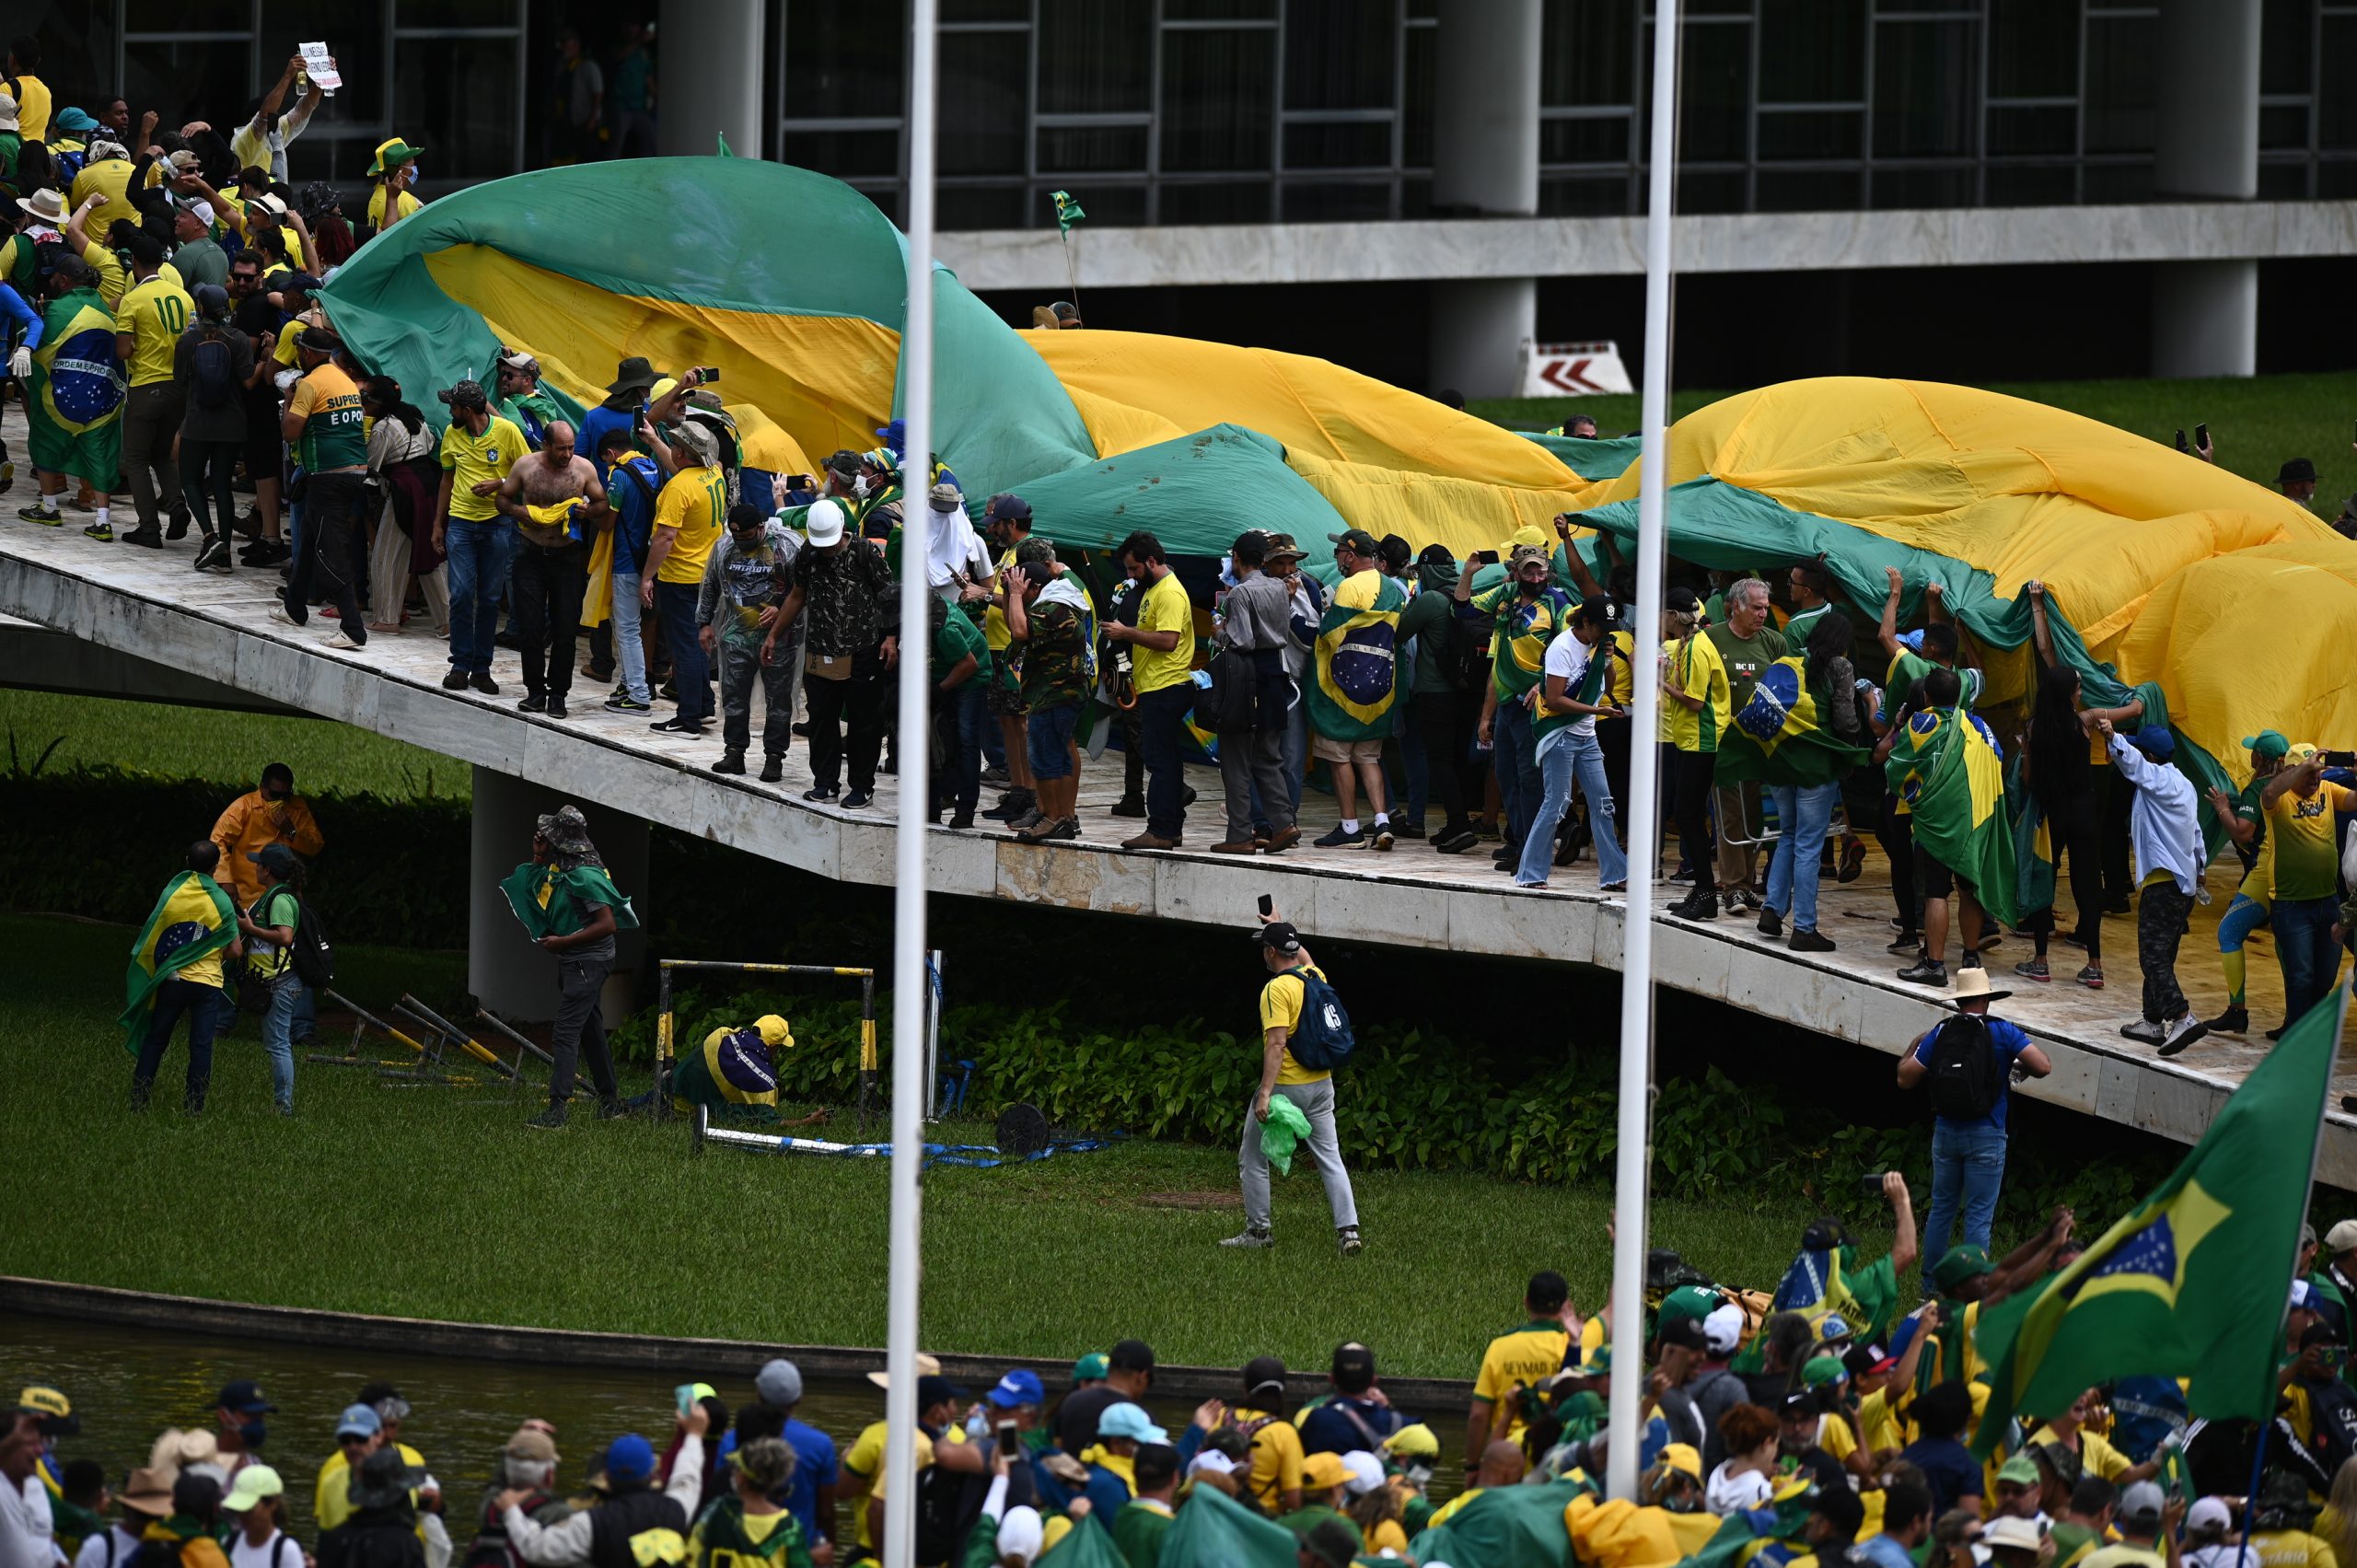 Βραζιλία: Υπό έλεγχο η κατάσταση μετά από την ακροδεξιά προσπάθεια αποσταθεροποίησης του Λούλα